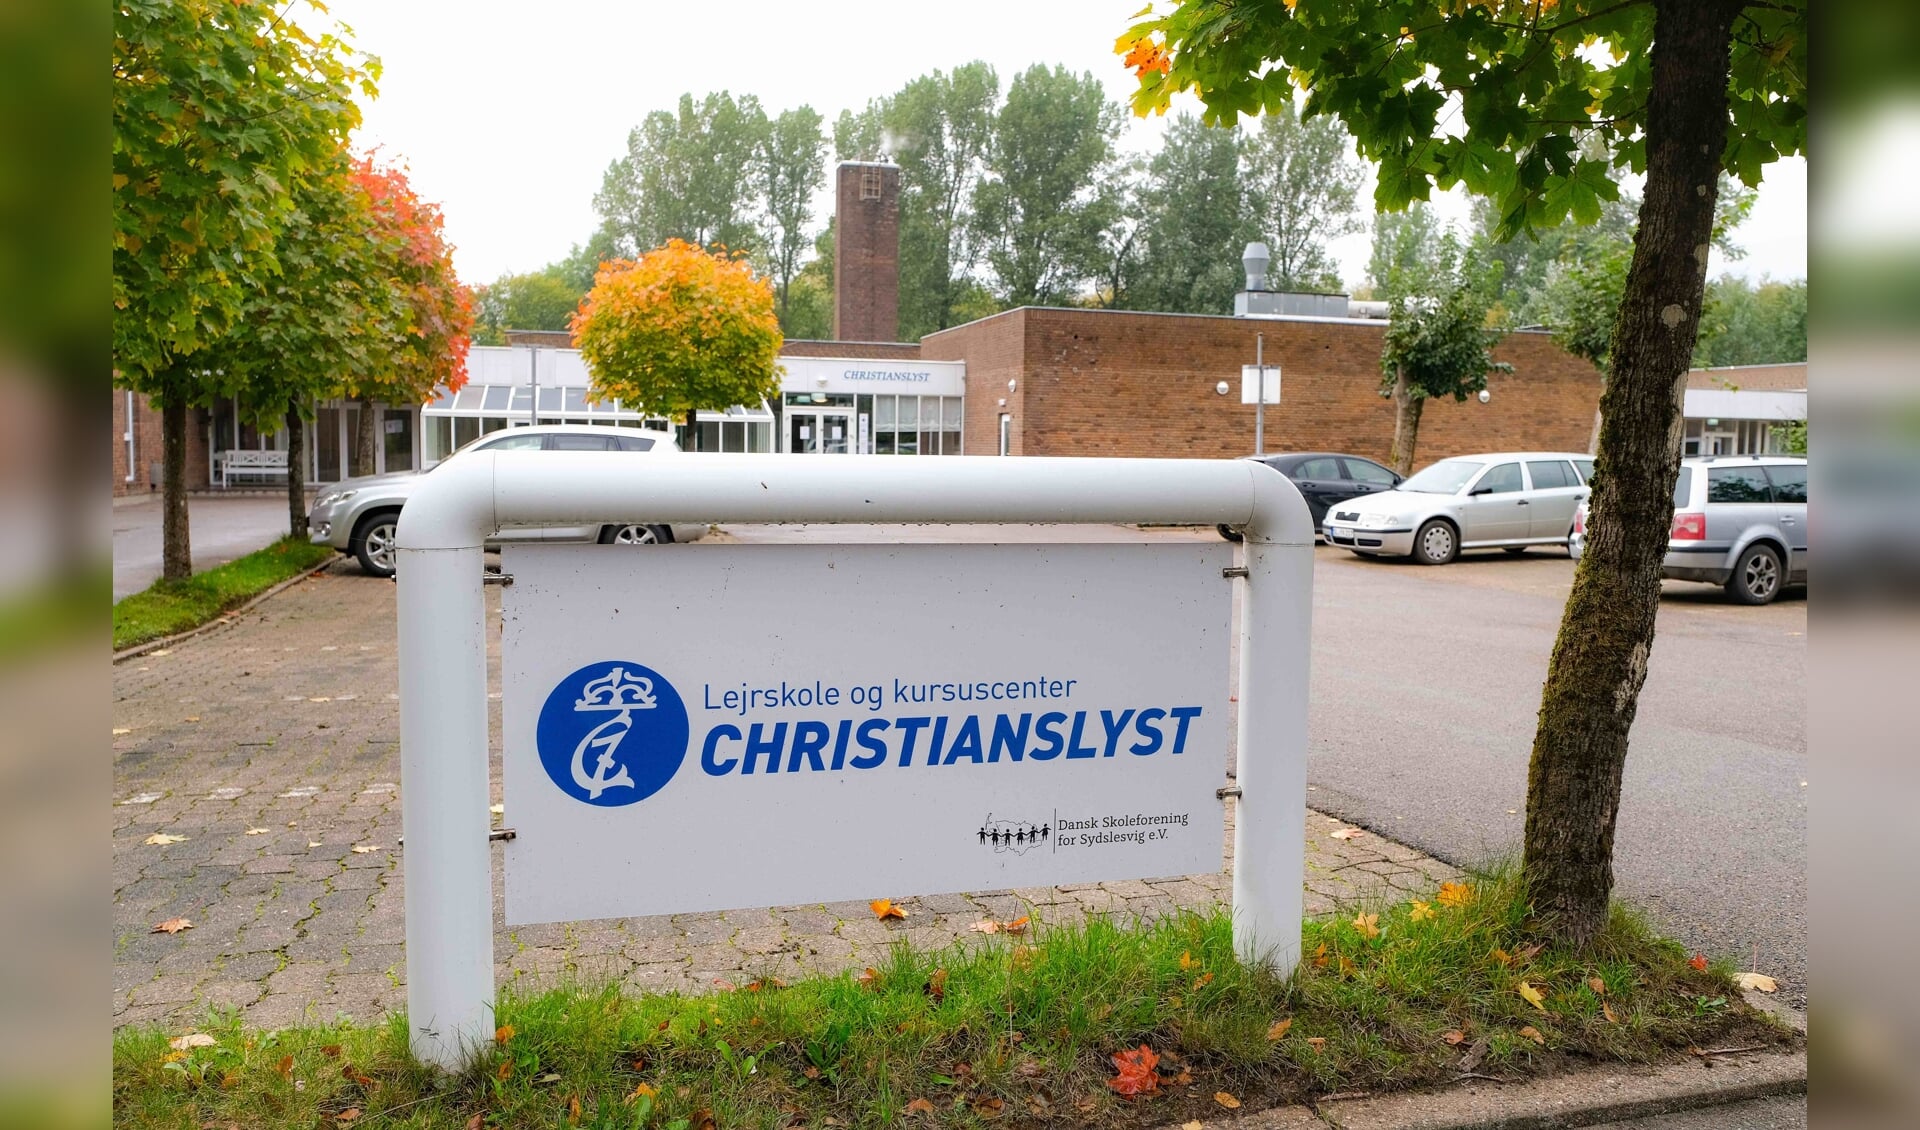 Den 1. januar overtog Skoleforeningen Christianslyst, og 2020 så lovende ud. Lige indtil marts ...